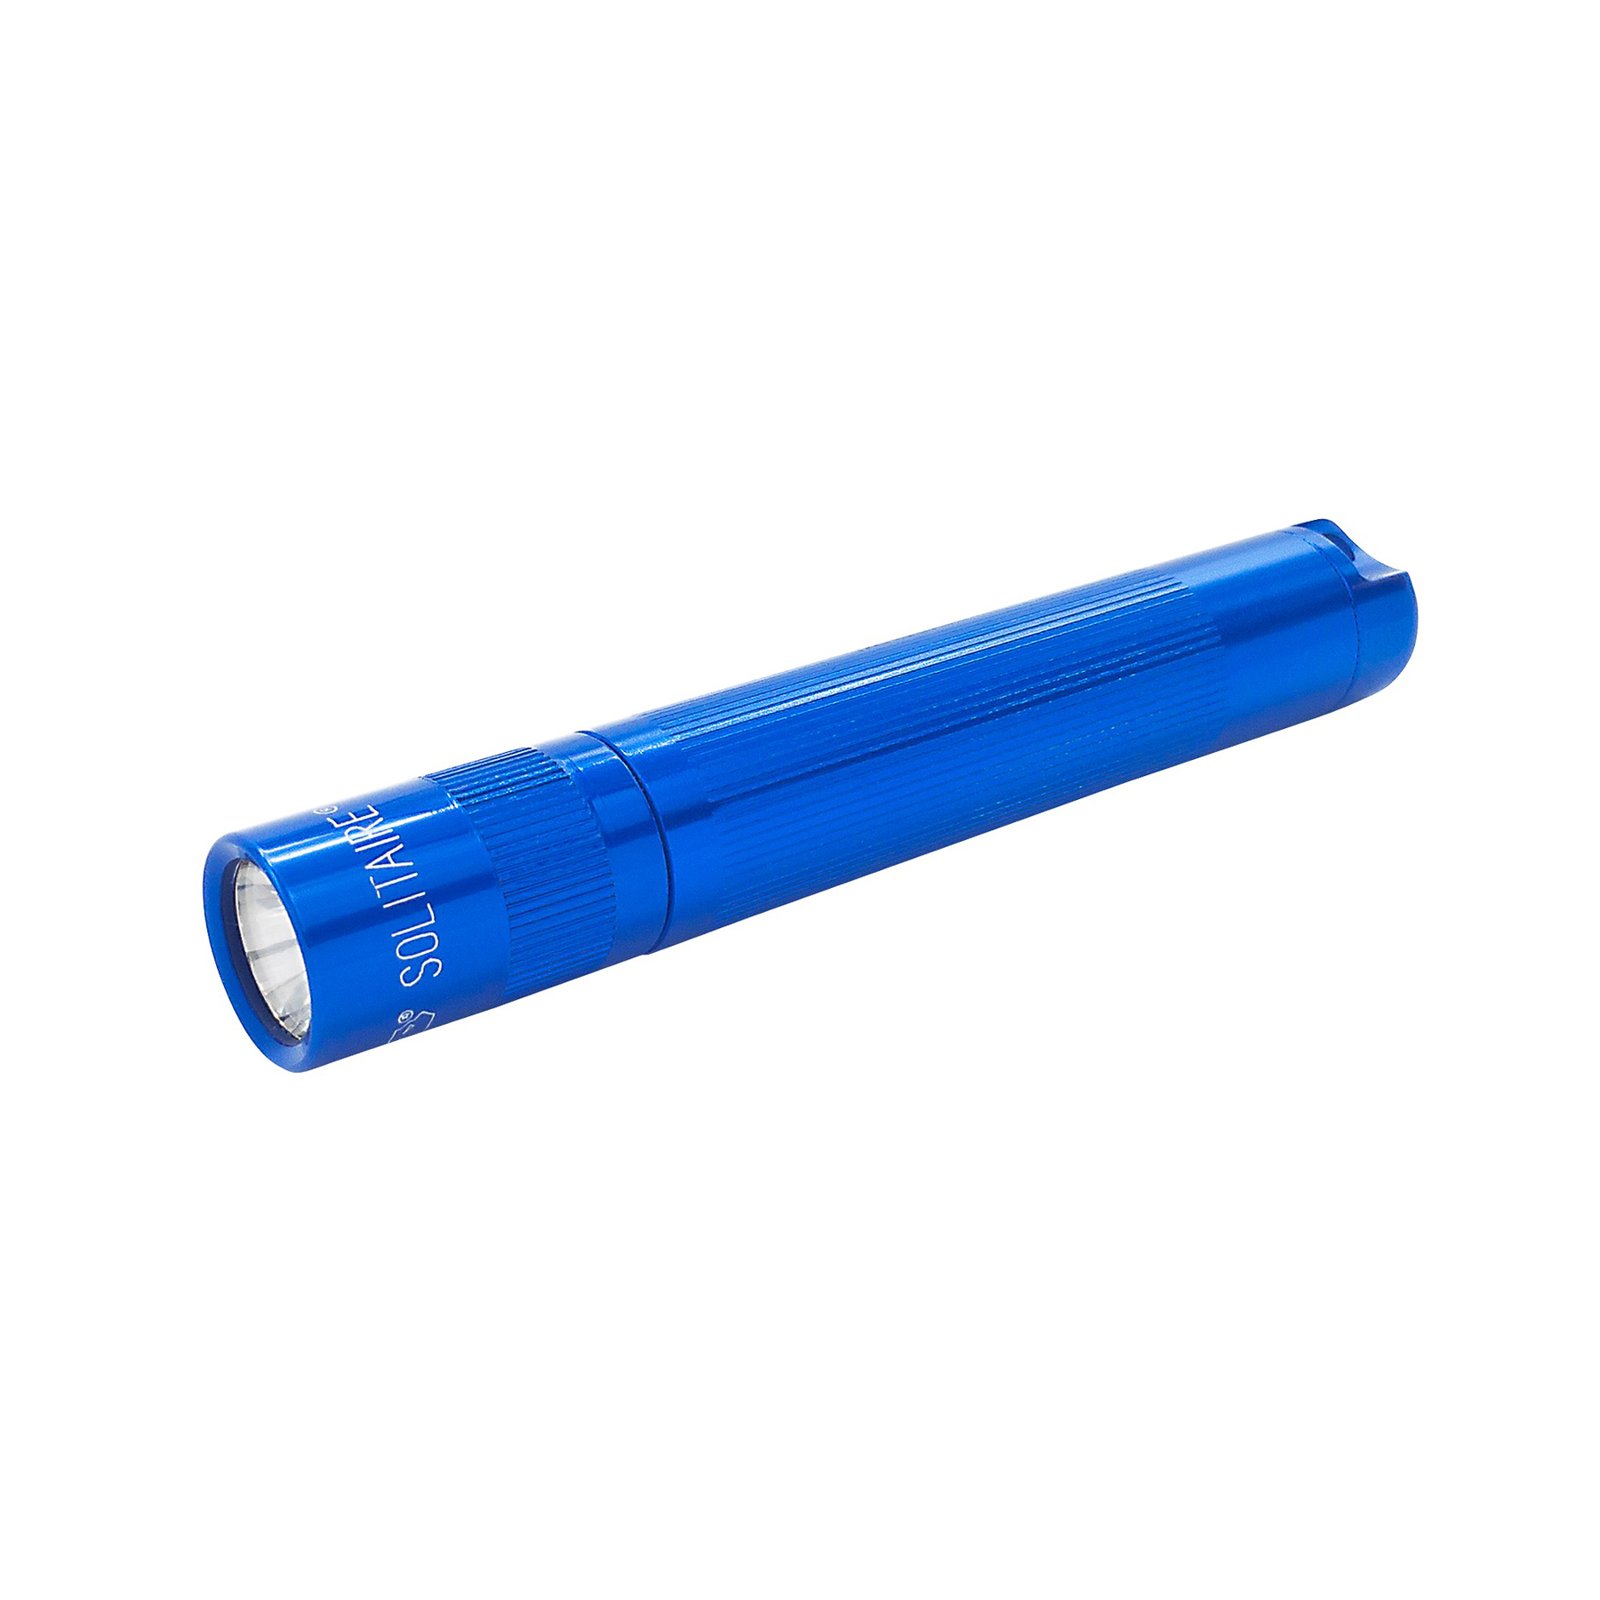 Svítilna Maglite LED Solitaire, 1 článek AAA, modrá